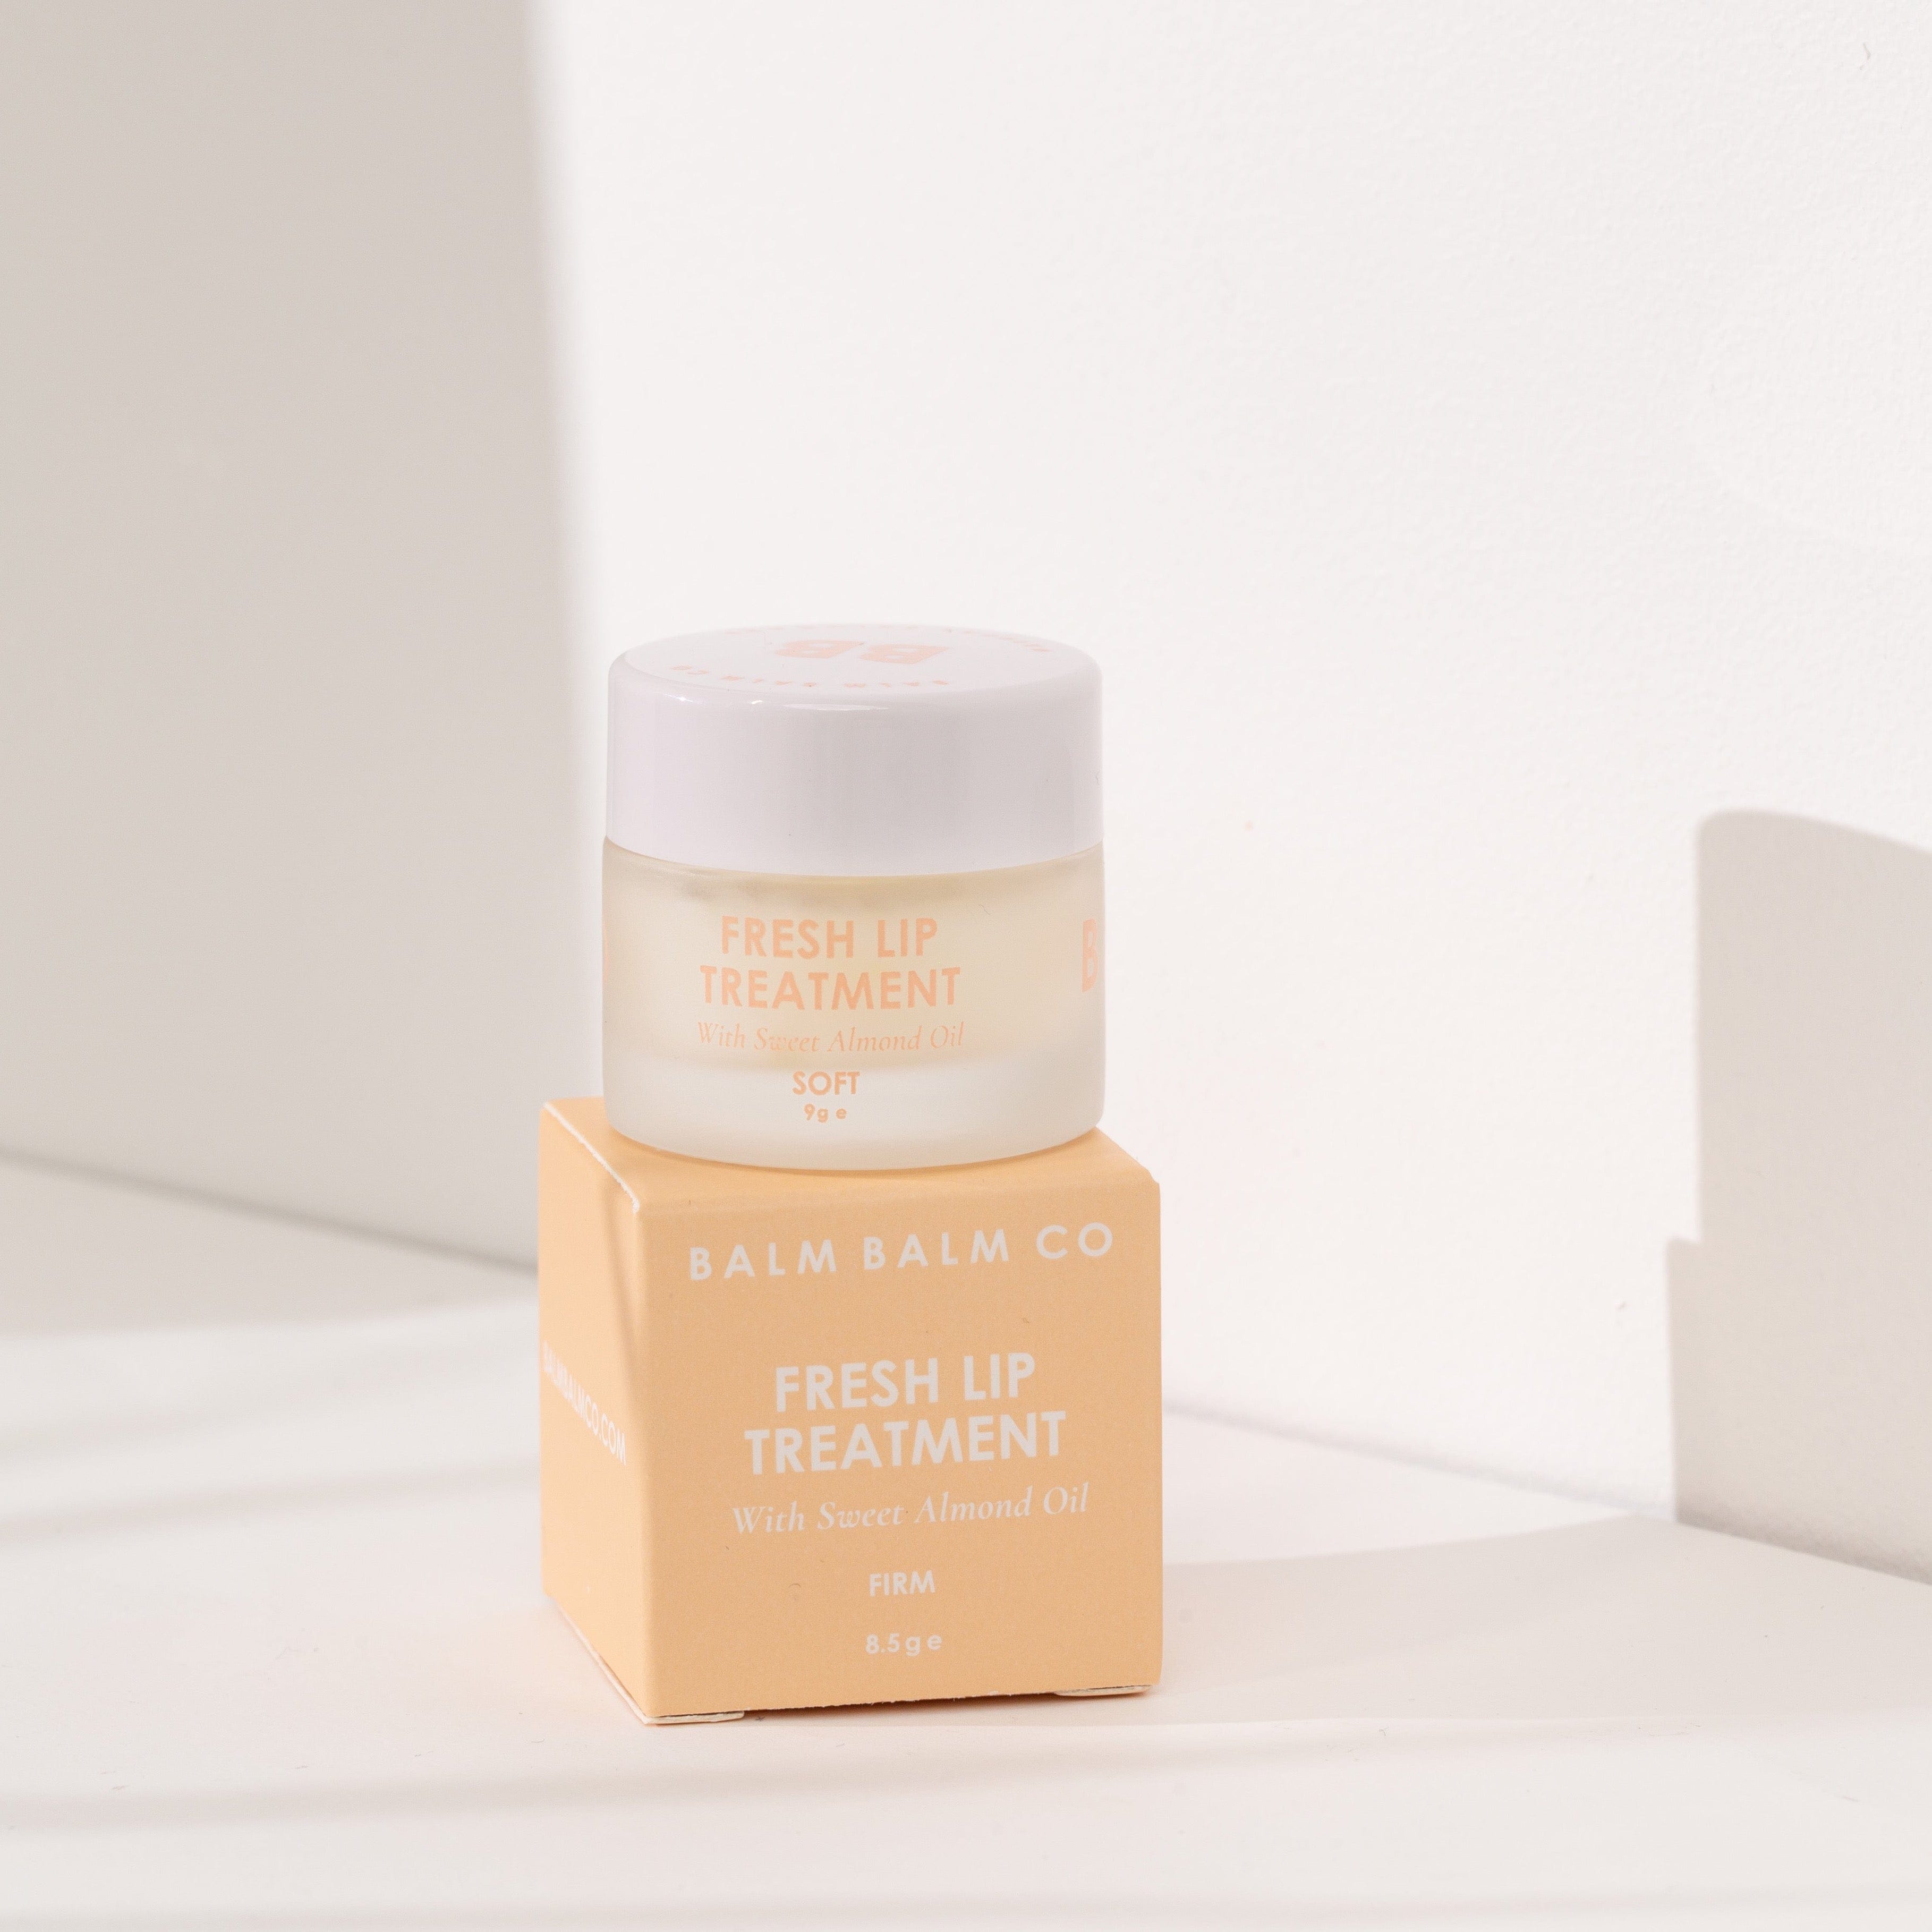 Balm Balm Fresh Lip Treatments - Firm + Soft + Vanilla FIRM by Balm Balm Co